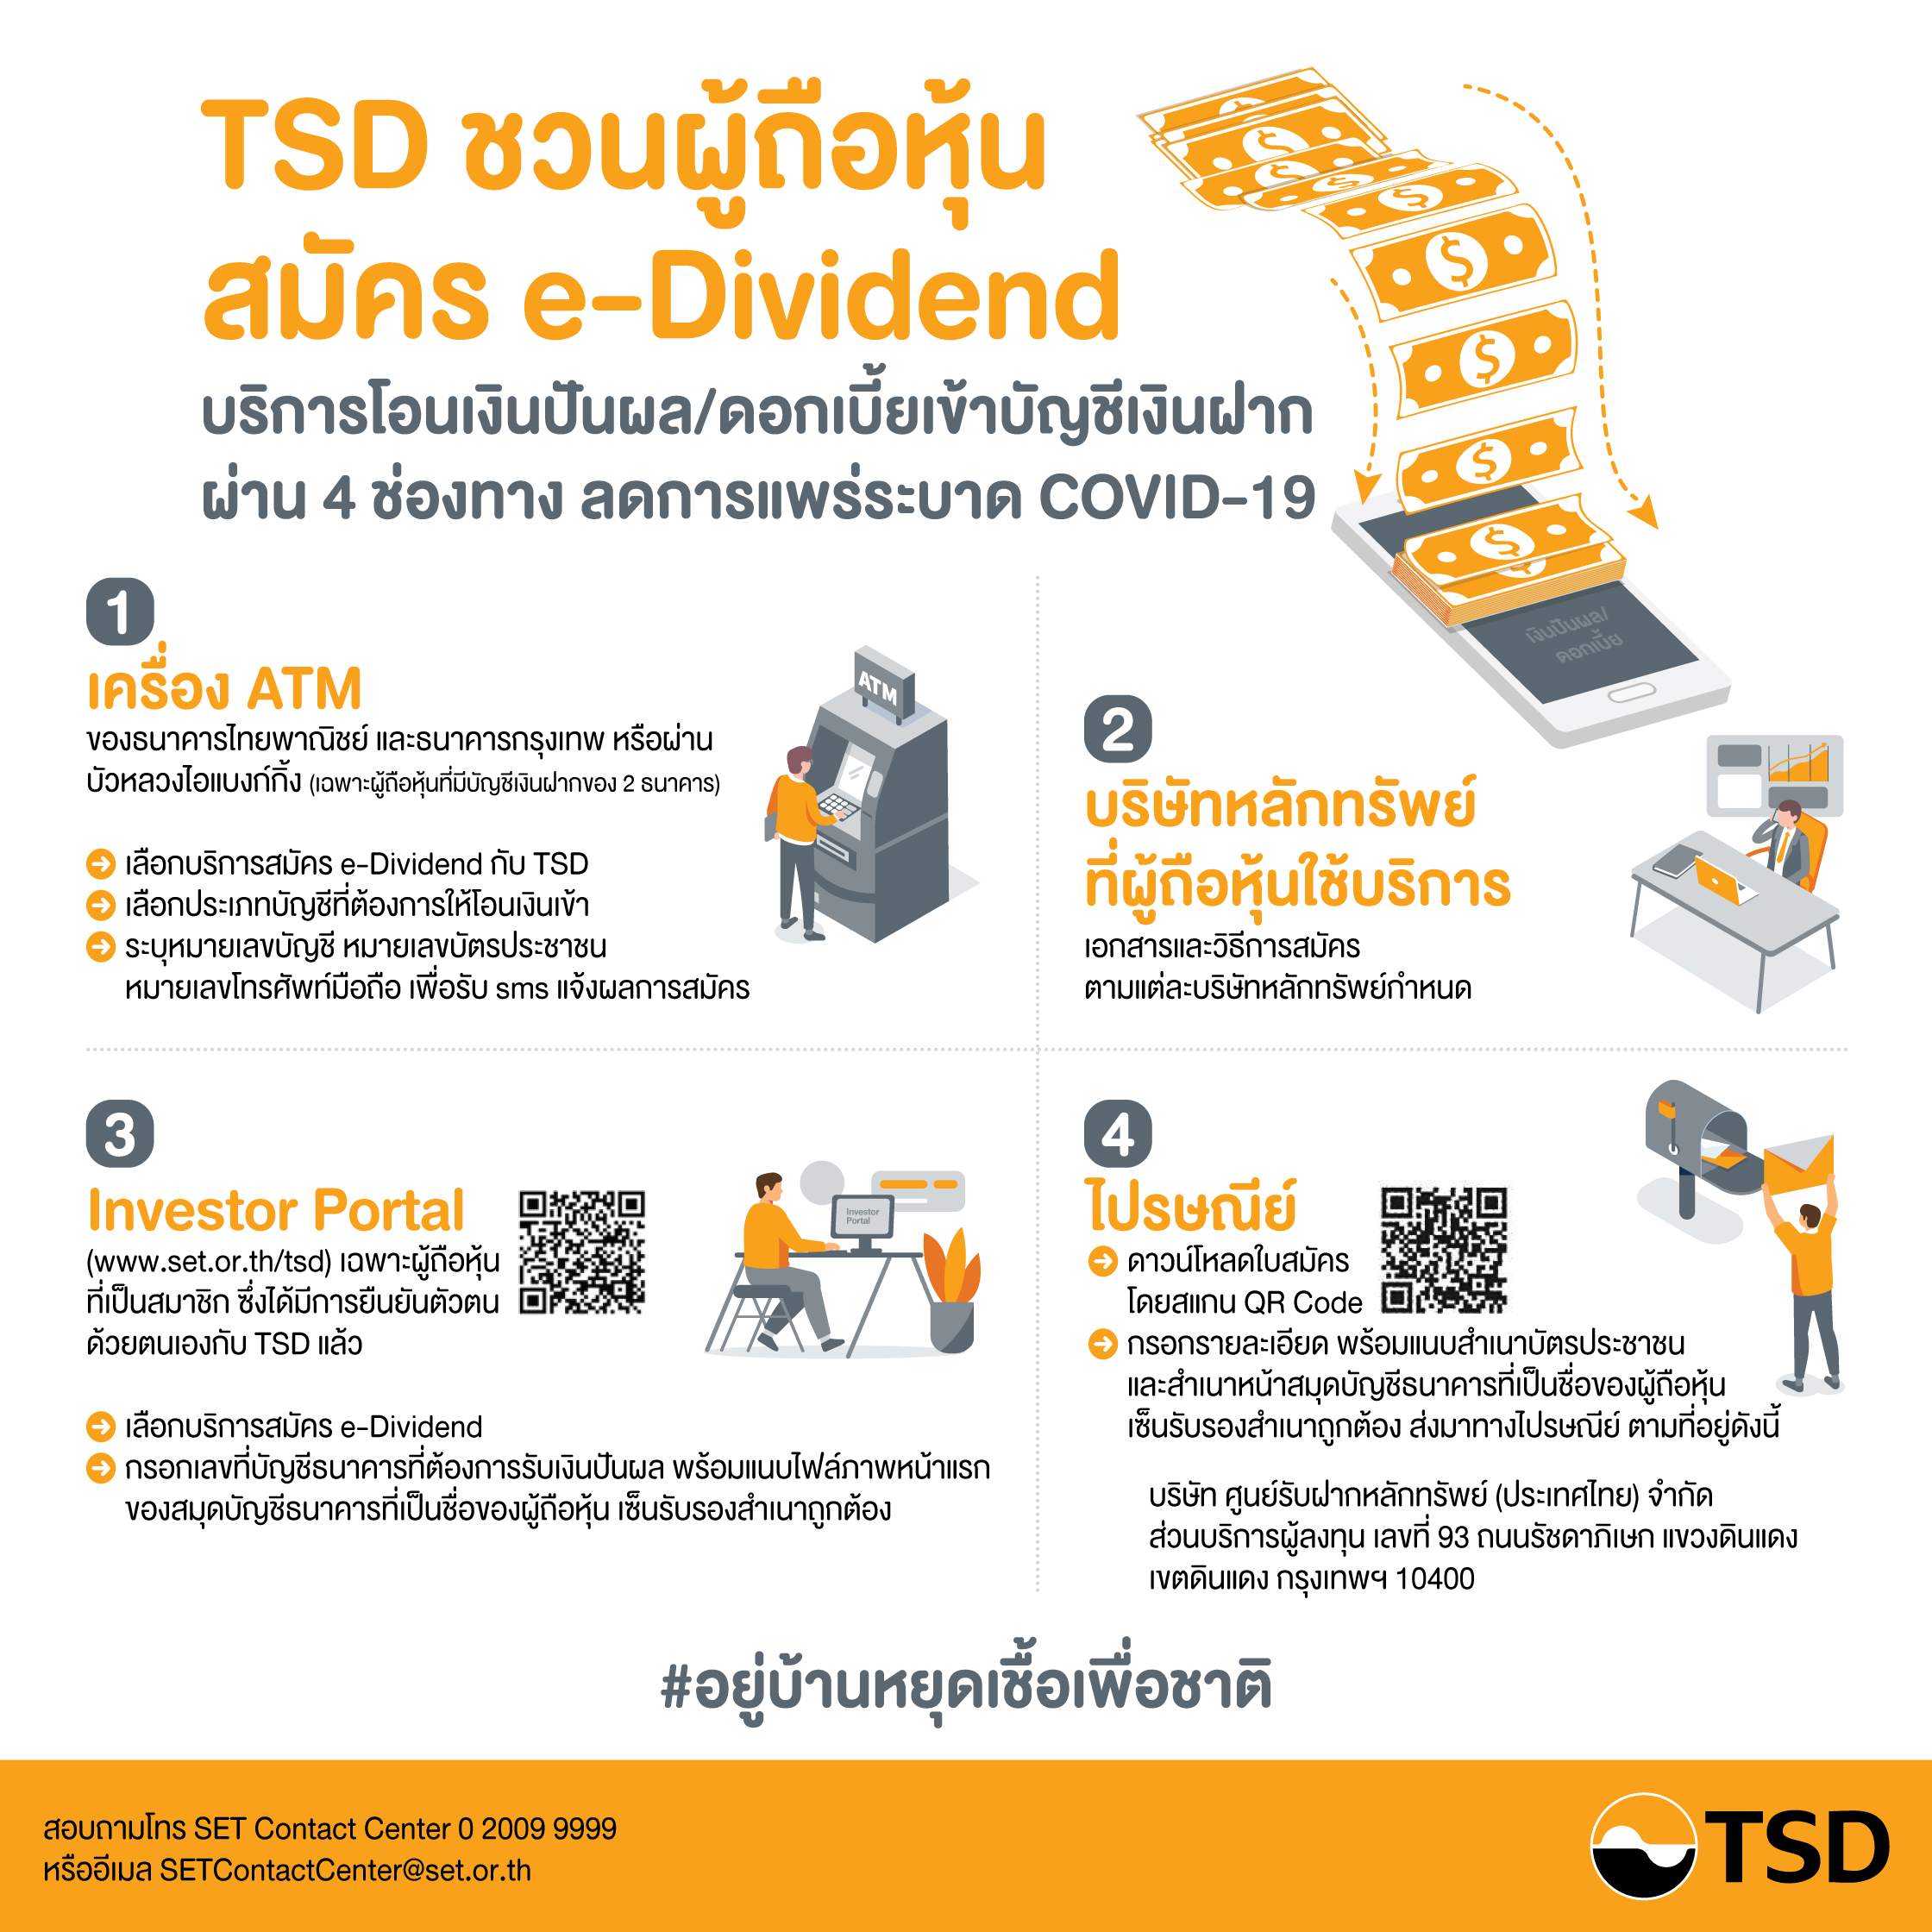 ลาดหลักทรัพย์แห่งประเทศไทย ขอนำส่งข่าวสั้น TSDเชิญชวนผู้ถือหุ้นสมัครใช้บริการ e-Dividendผ่านออนไลน์ ลดการแพร่ระบาดโรคCOVID-19